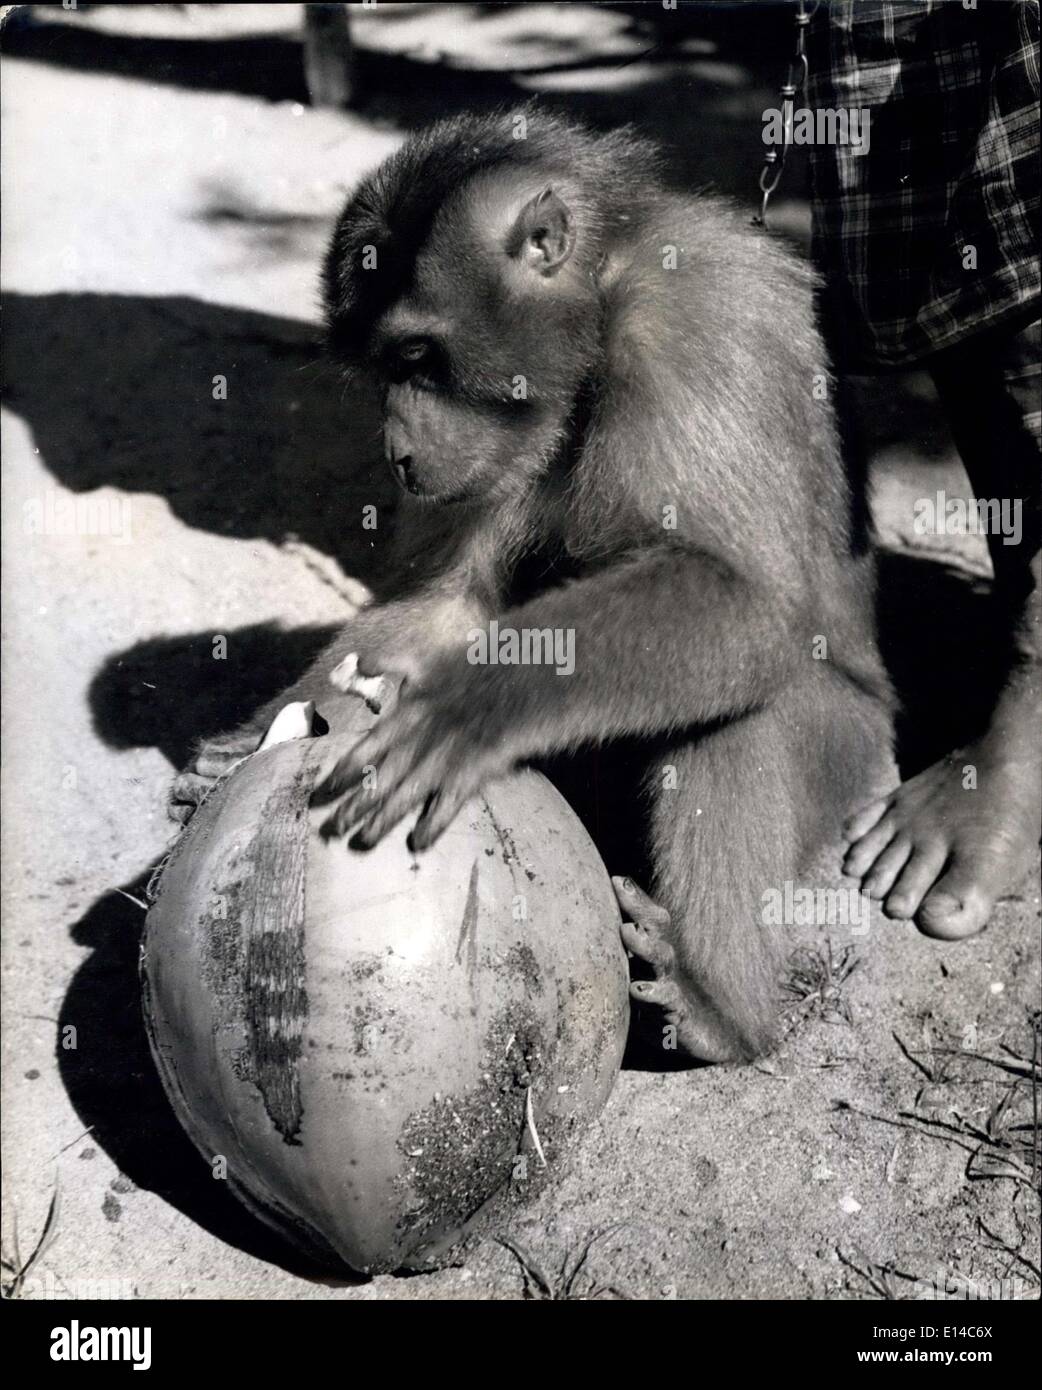 17. Apr 2012 - Zurück auf dem Boden der Affe inspiziert eine der Nüsse, die sie geerntet hat. Die grüne Hülle ist abgeplatzt, aber die harte Schale hat das weiße Fleisch und die Milch geschützt, die zum Kochen von Fett verwendet werden, oder in Copra getrocknet.Madame Monkey arbeitet für ihr Leben in Sumatra: Als Kokosnuss-Sammlerin verdient sie einen menschlichen Arbeiter Lohn: Sumatra ist eine Insel voller Affen aller Formen, Farben und Größen. Die Eingeborenen haben lange ken Vorteil dieses und trainieren weibliche Gefangene Affen, um einen nützlichen Tag der Arbeit für ihren Schutz zu tun Stockfoto